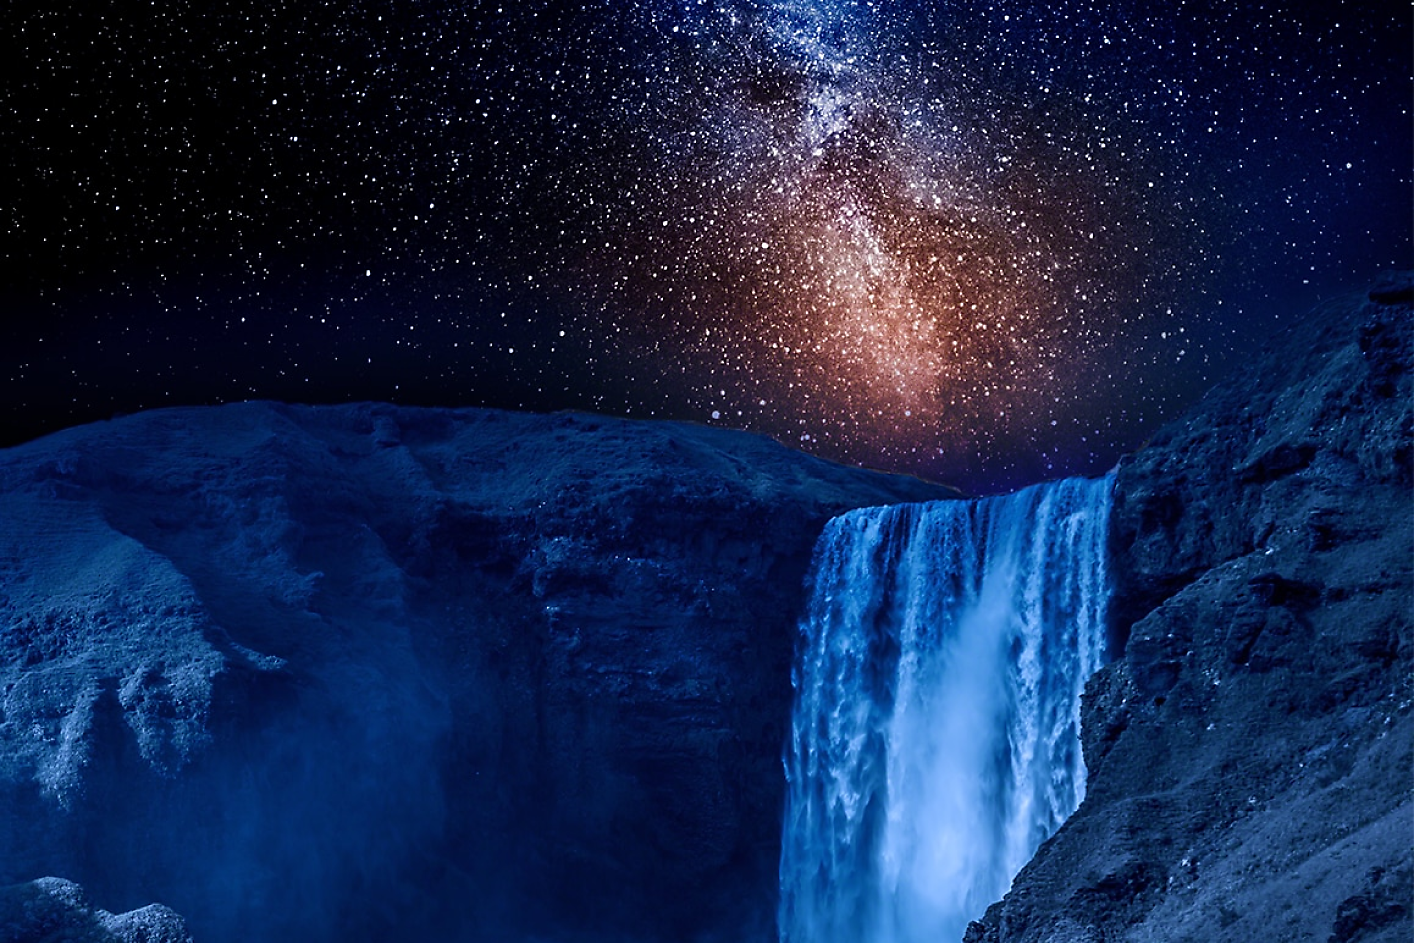 Vue d'une cascade bleu foncé avec un ciel nocturne étoilé en arrière-plan